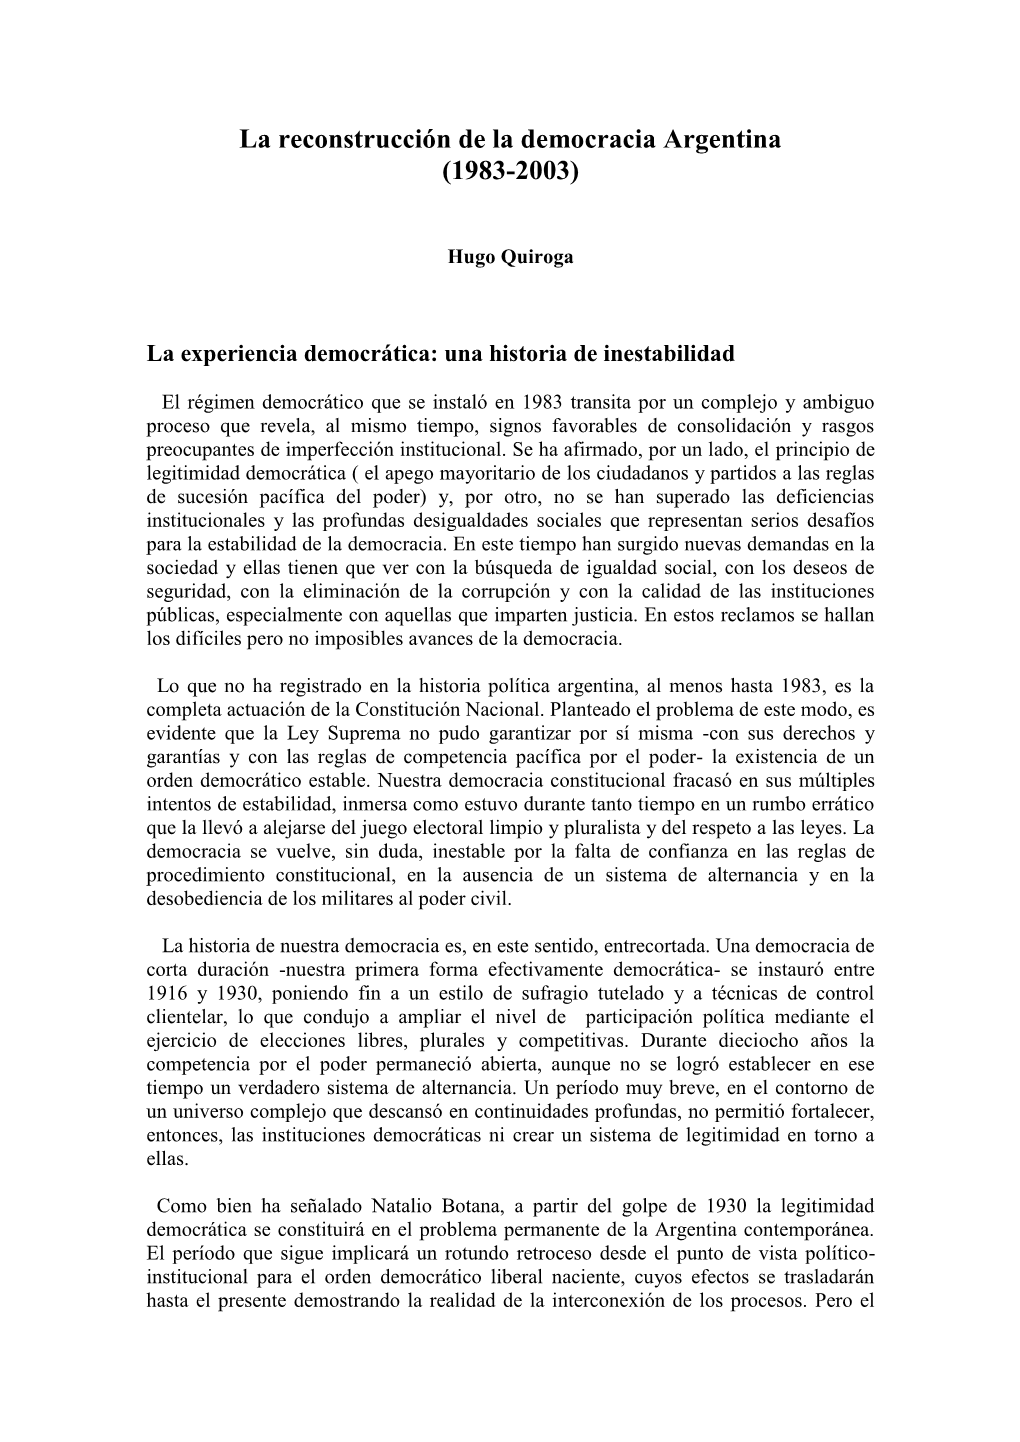 La Reconstrucción De La Democracia Argentina (1983-2003)